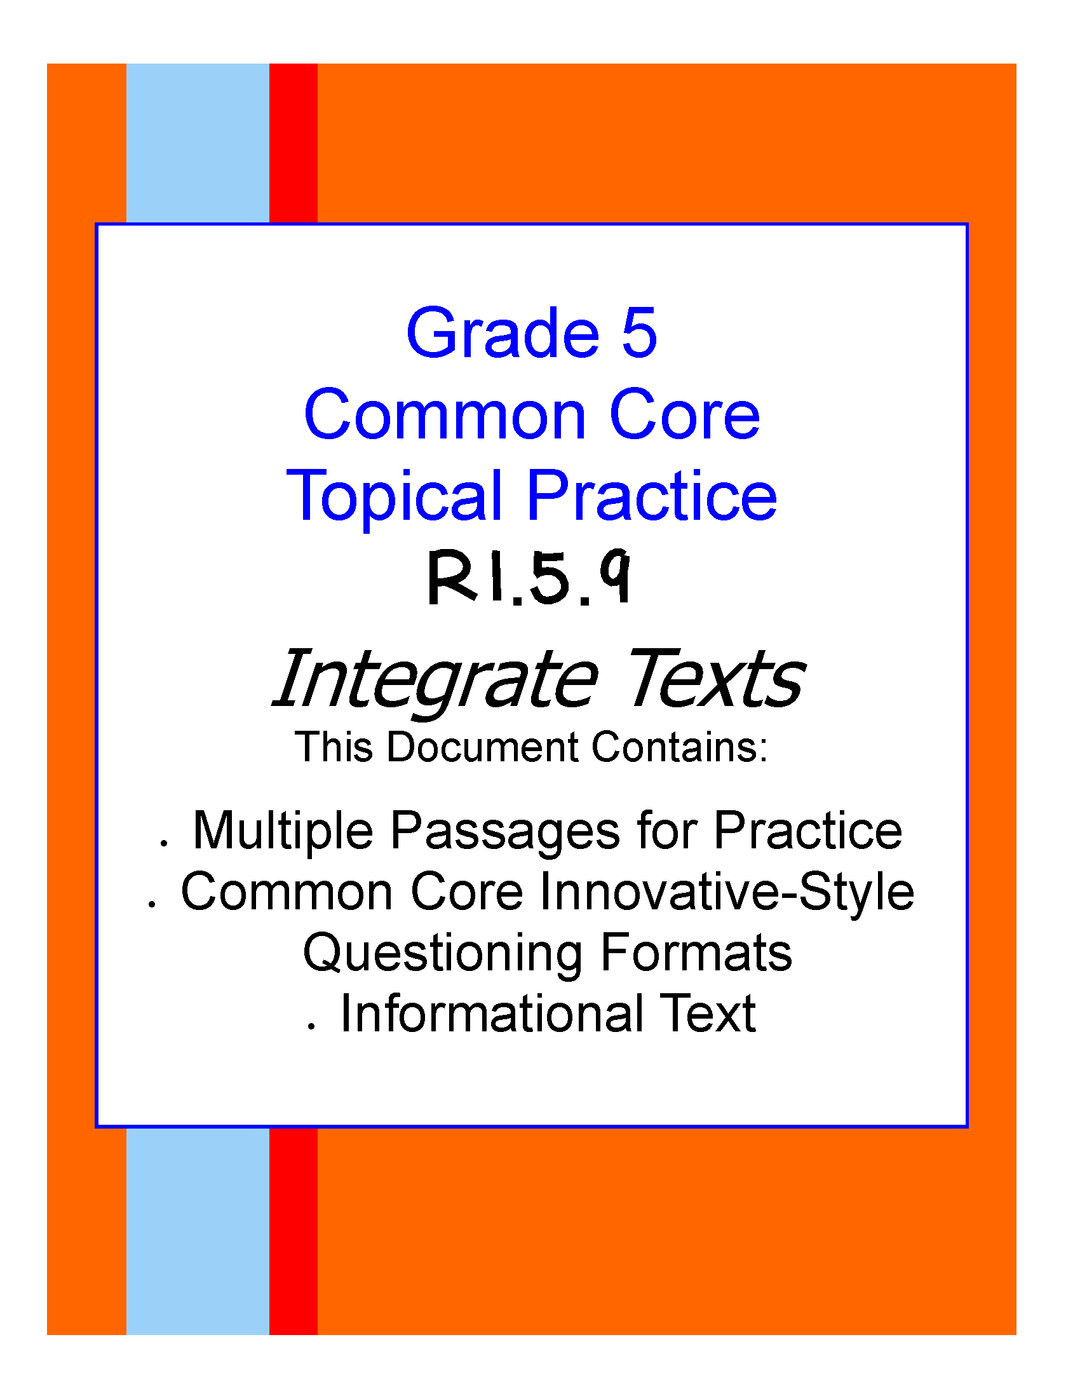 Common Core Grade 5: Integrate Texts RI.5.9 Practice